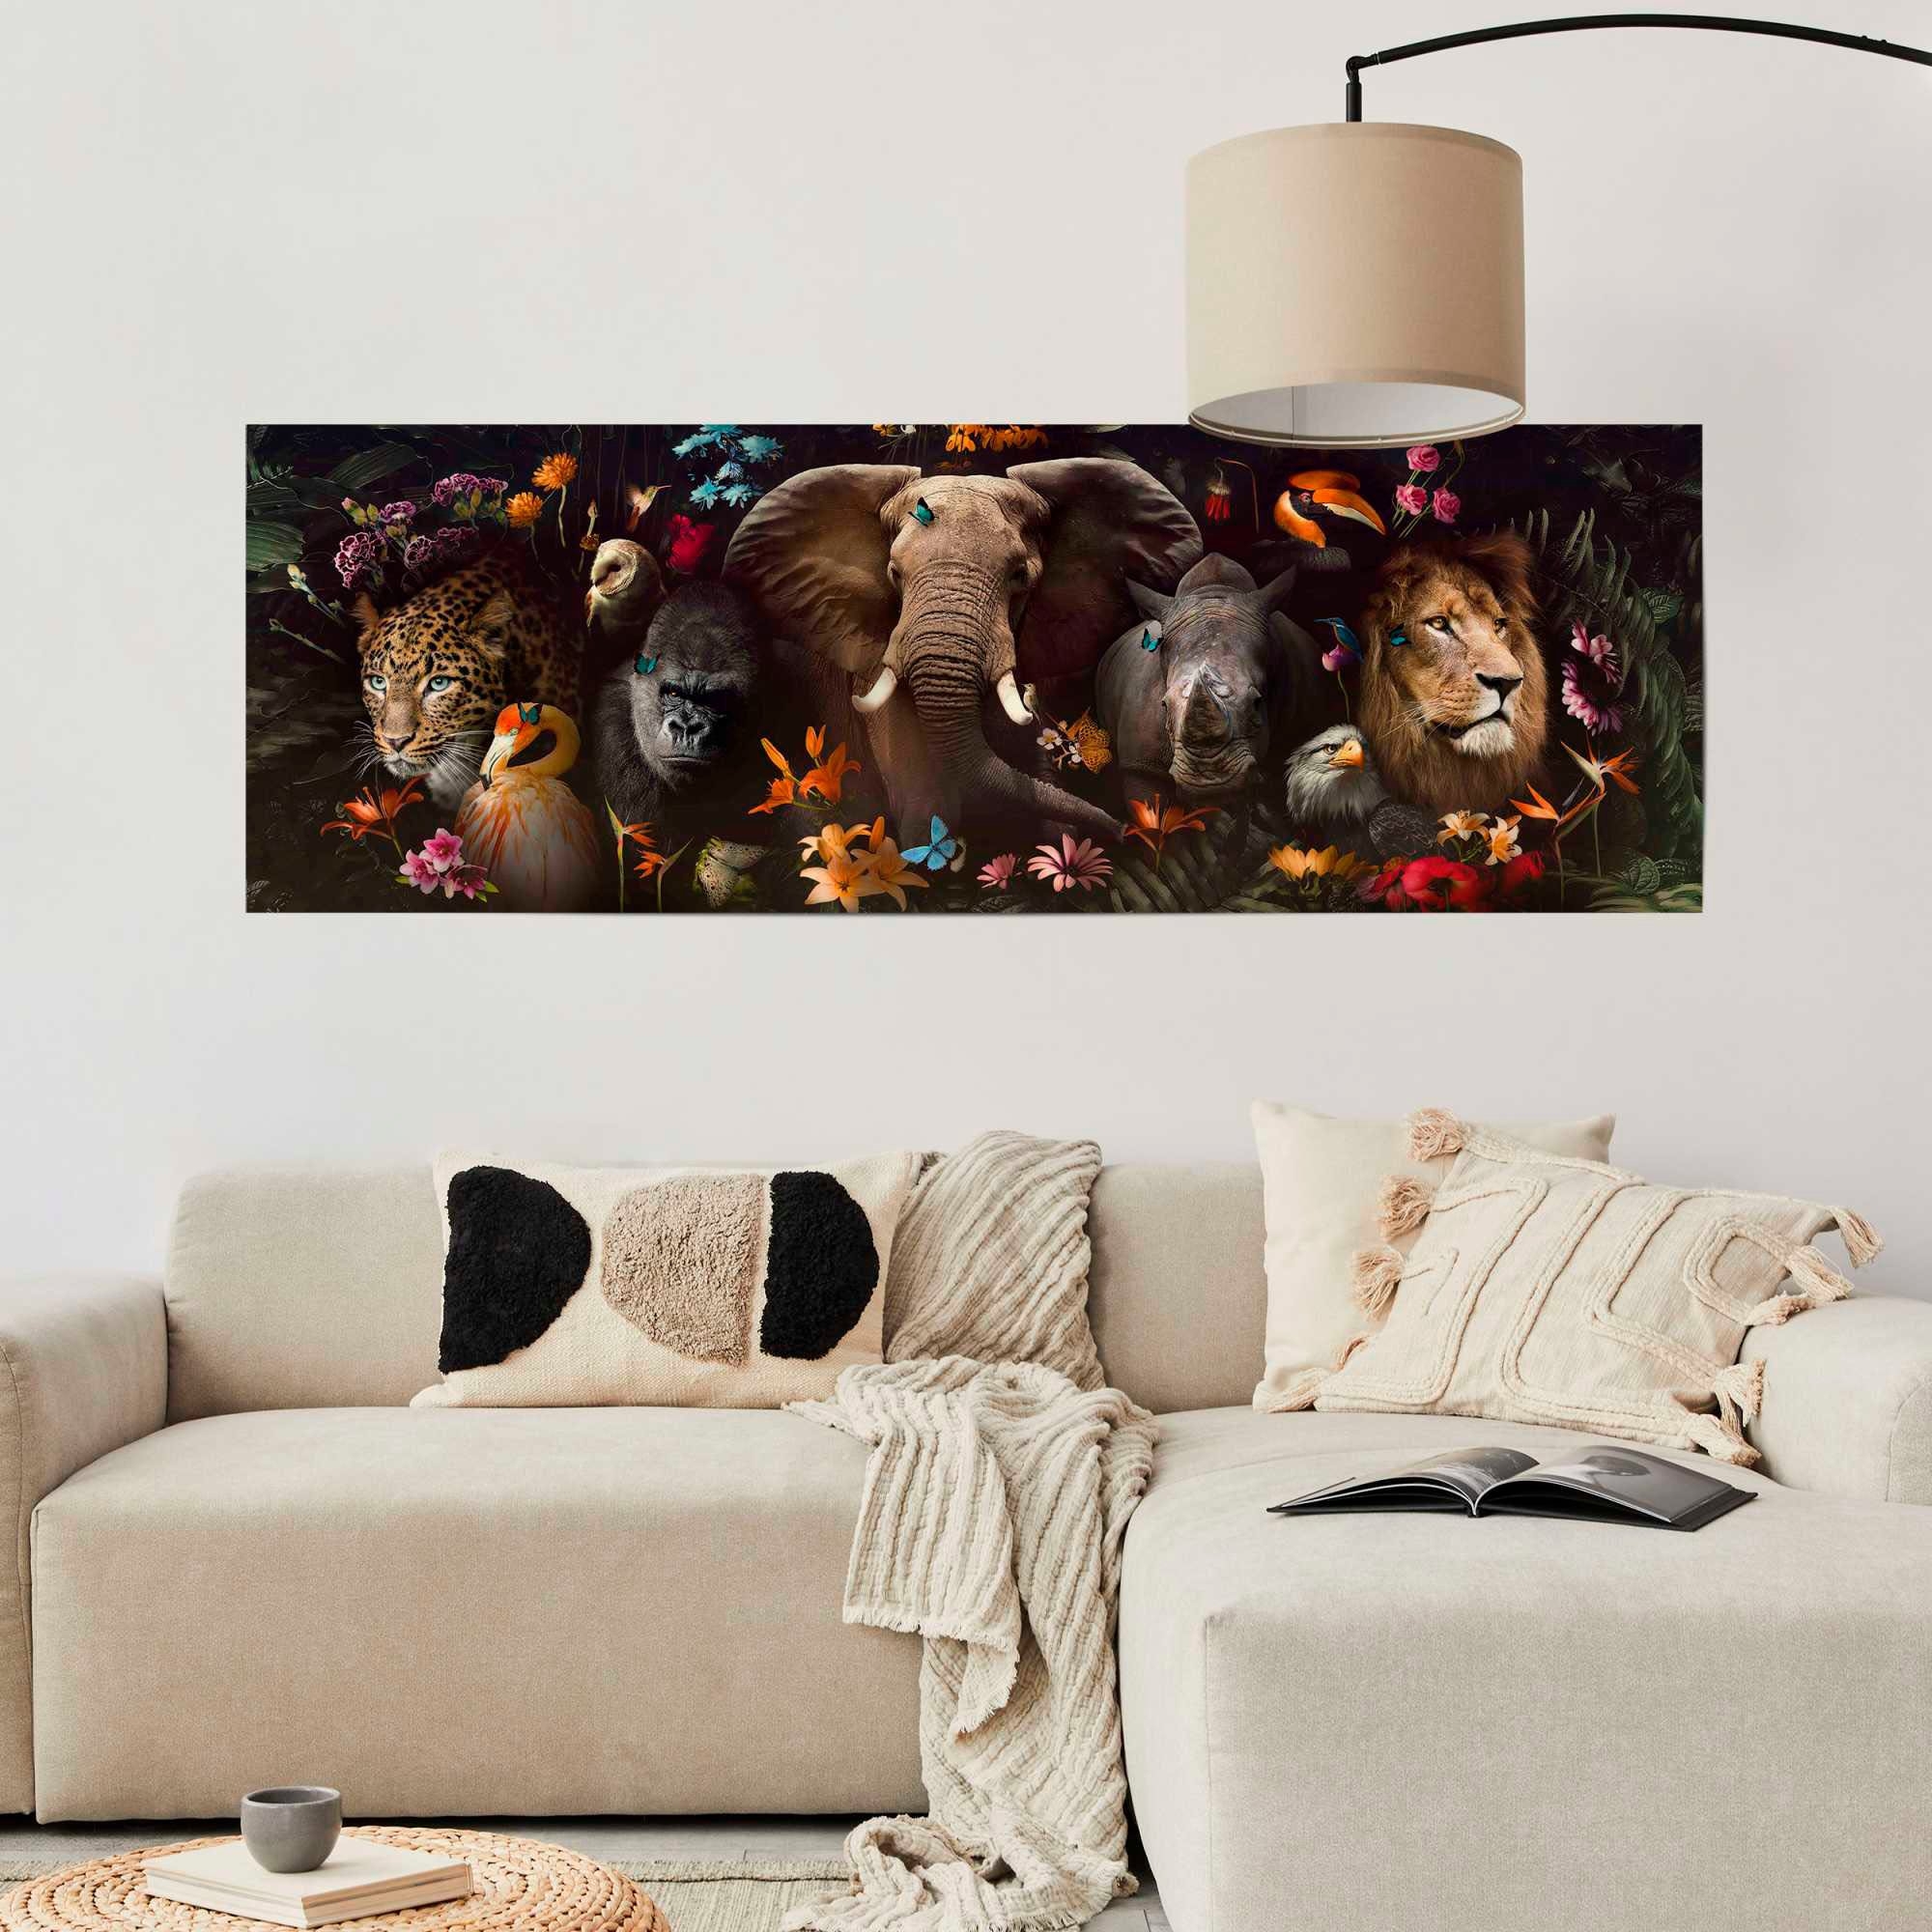 Reinders! Poster Dschungel Fantasie makkelijk gekocht | OTTO